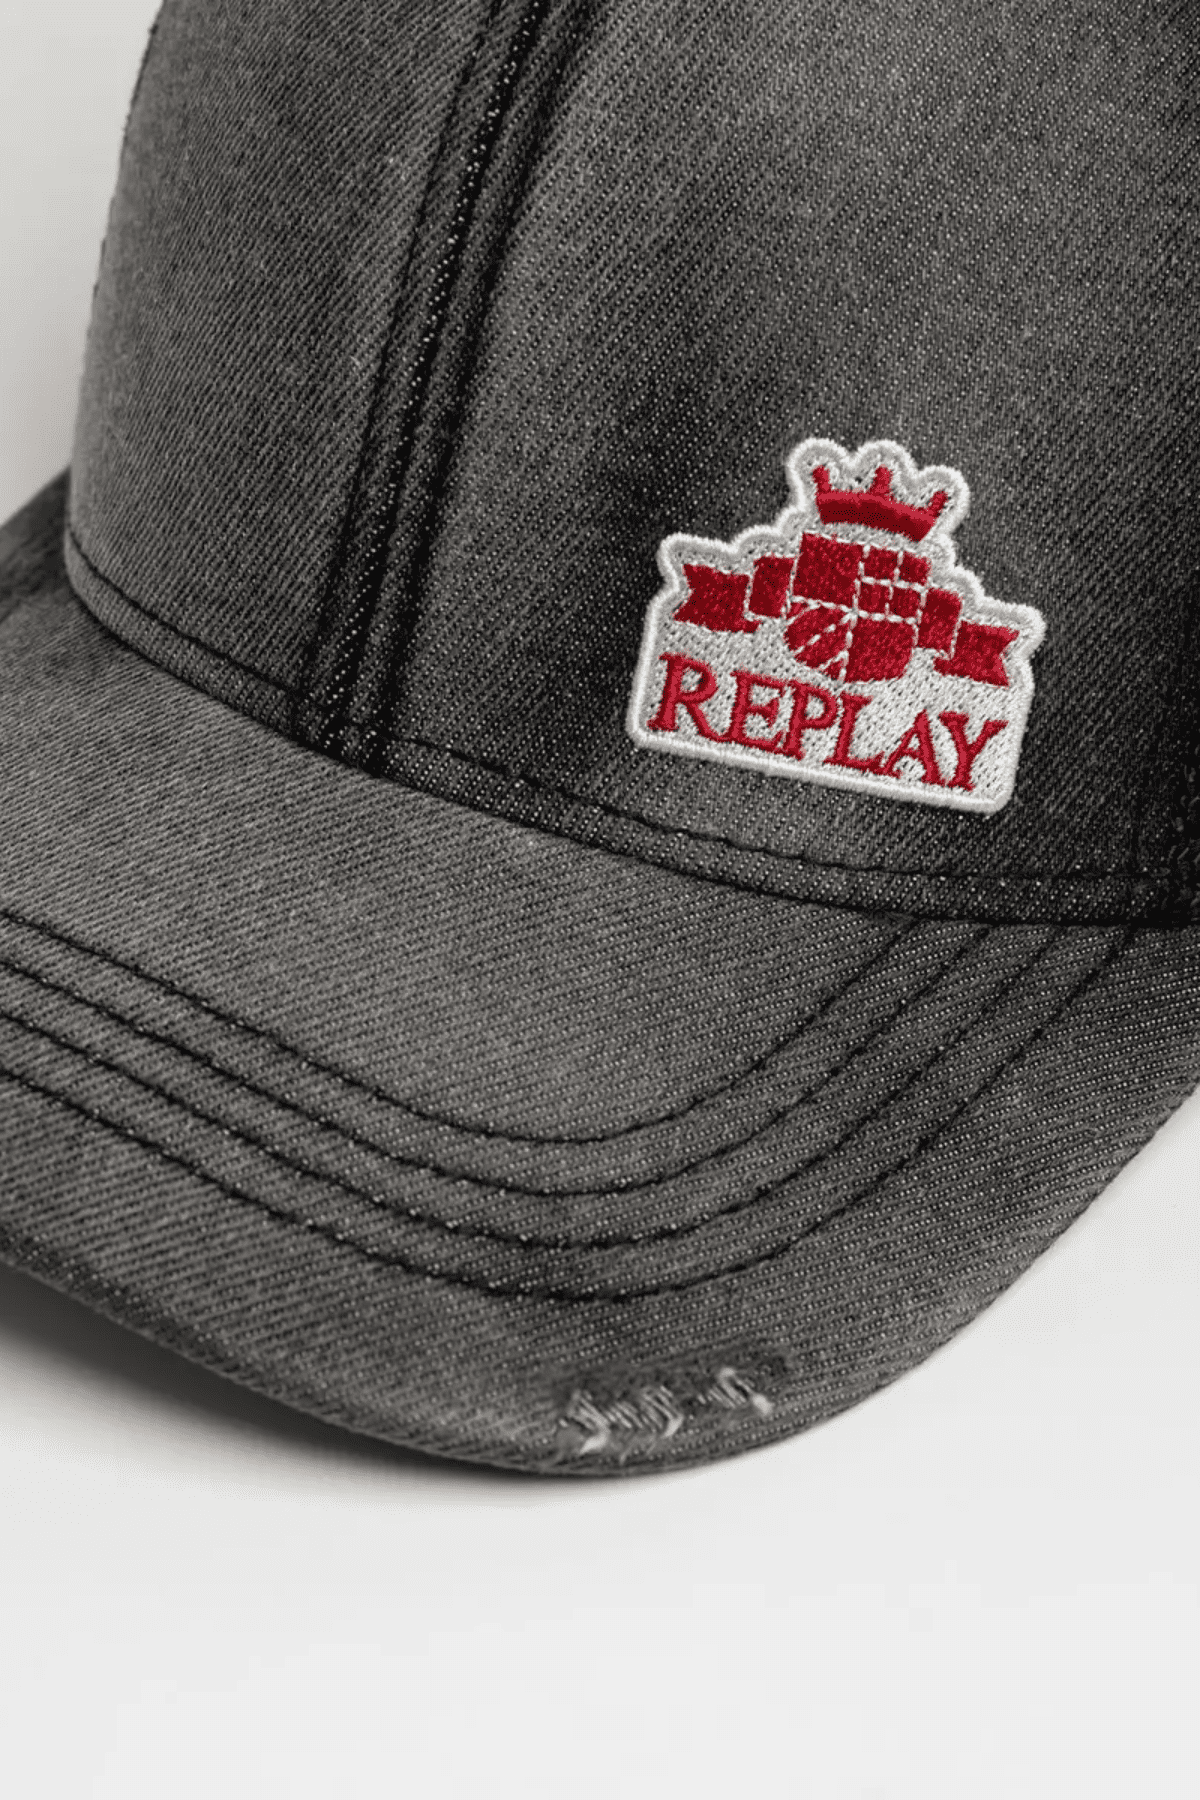 כובע מצחייה Replay Jeans ג'ינס ווינטג' משופשף מבית המותג ריפליי ג'ינס יוניסקס-Replay-One Size-נאקו